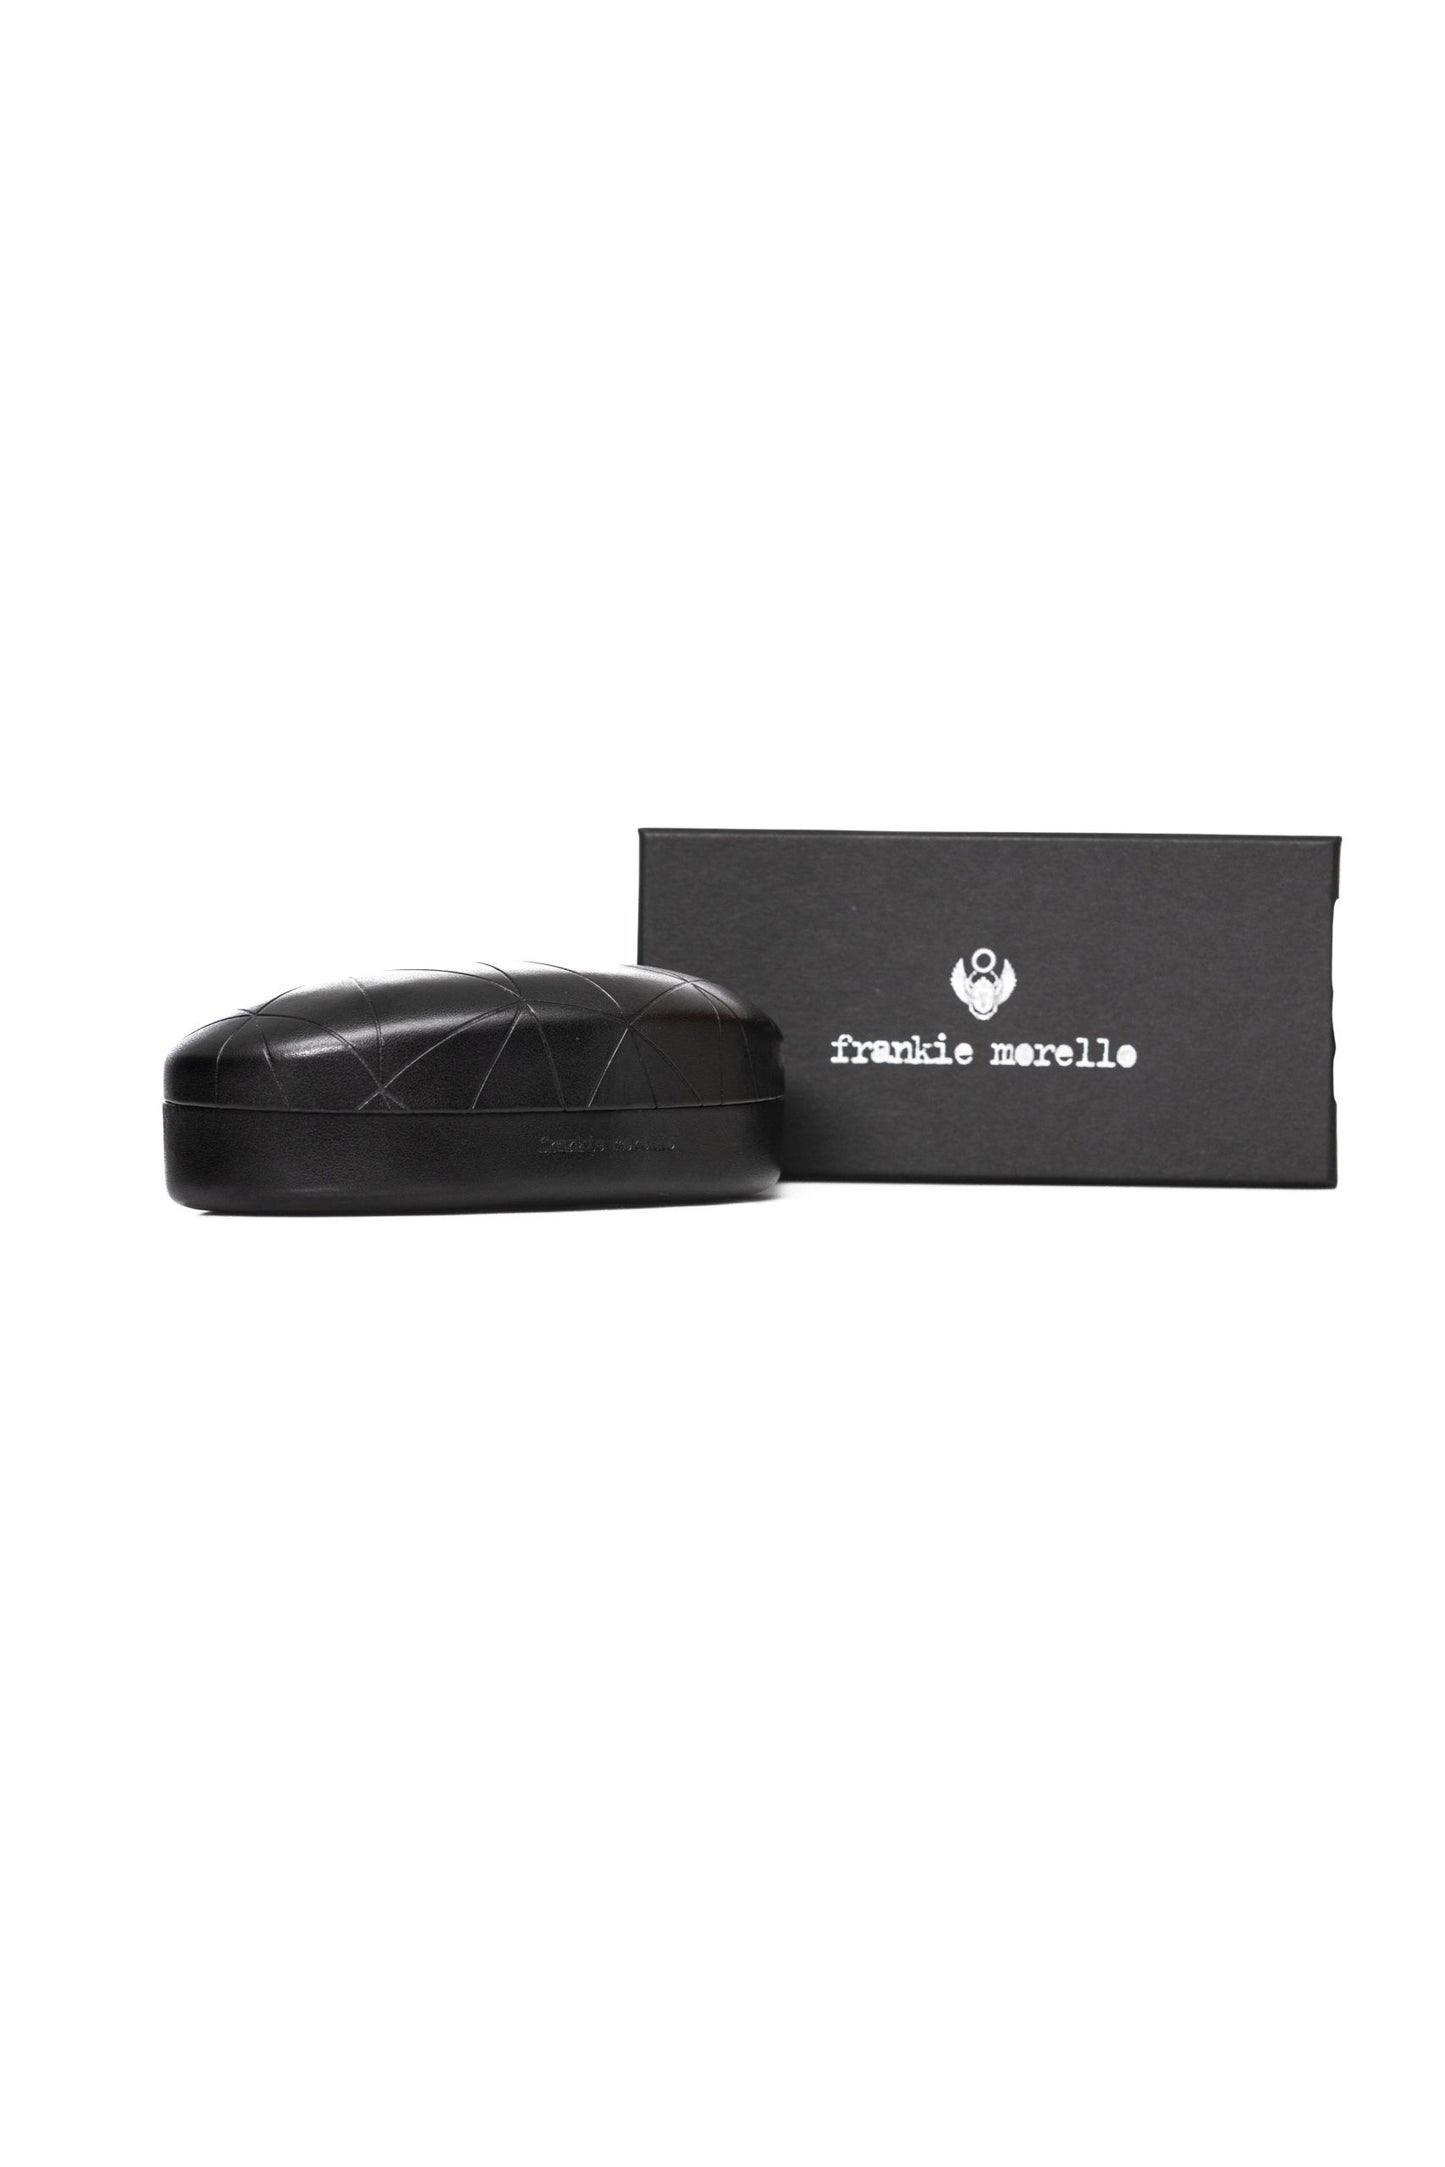 Frankie Morello FRMO-22087 Silver Metallic Fibre Sunglasses